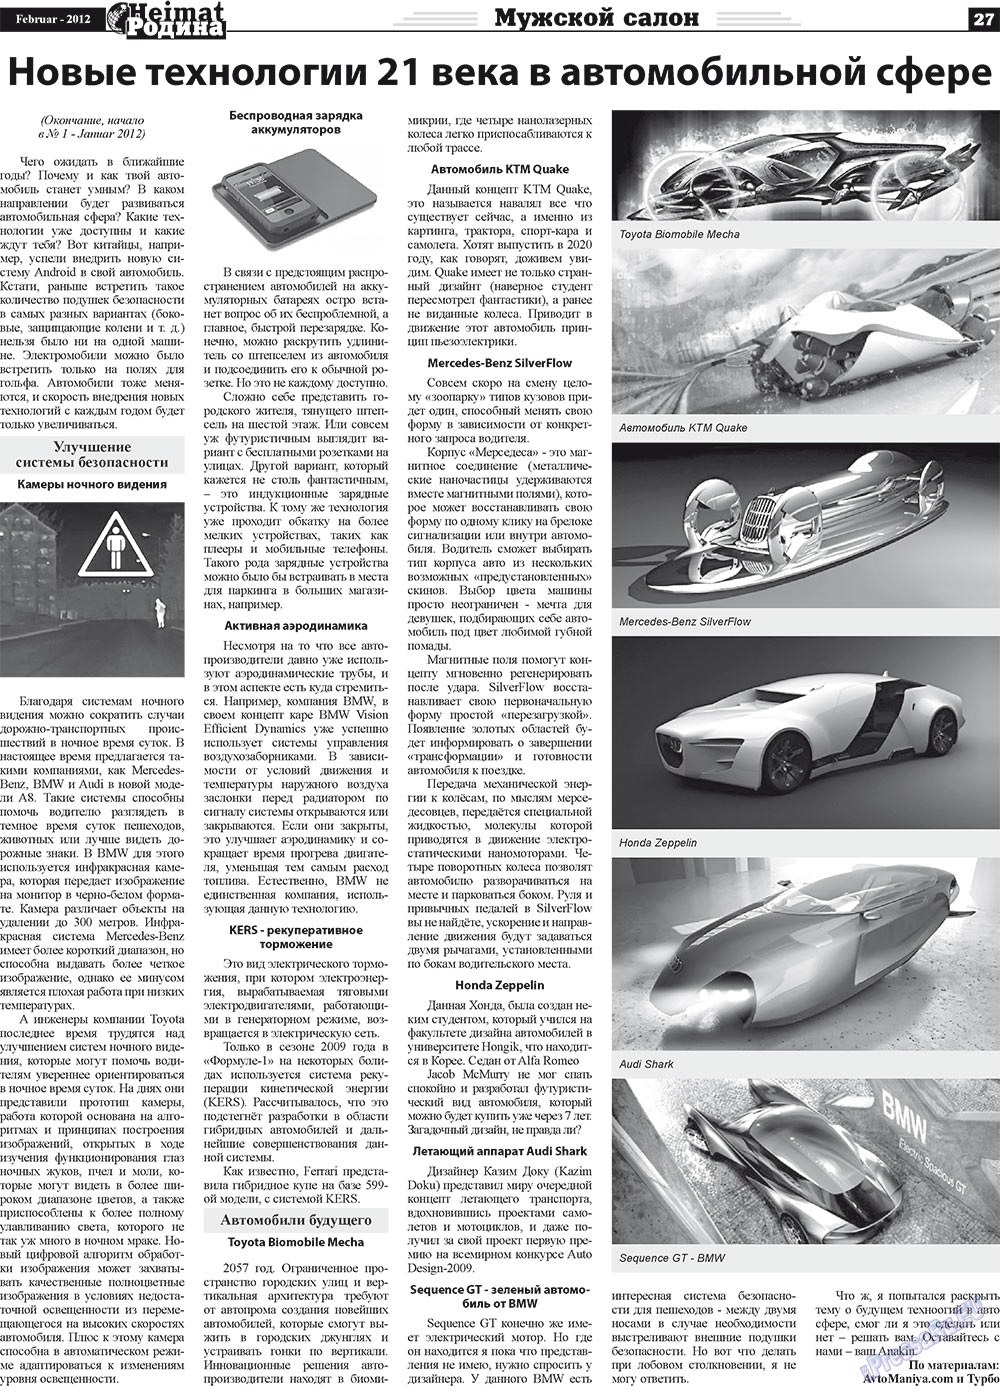 Heimat-Родина (газета). 2012 год, номер 2, стр. 27